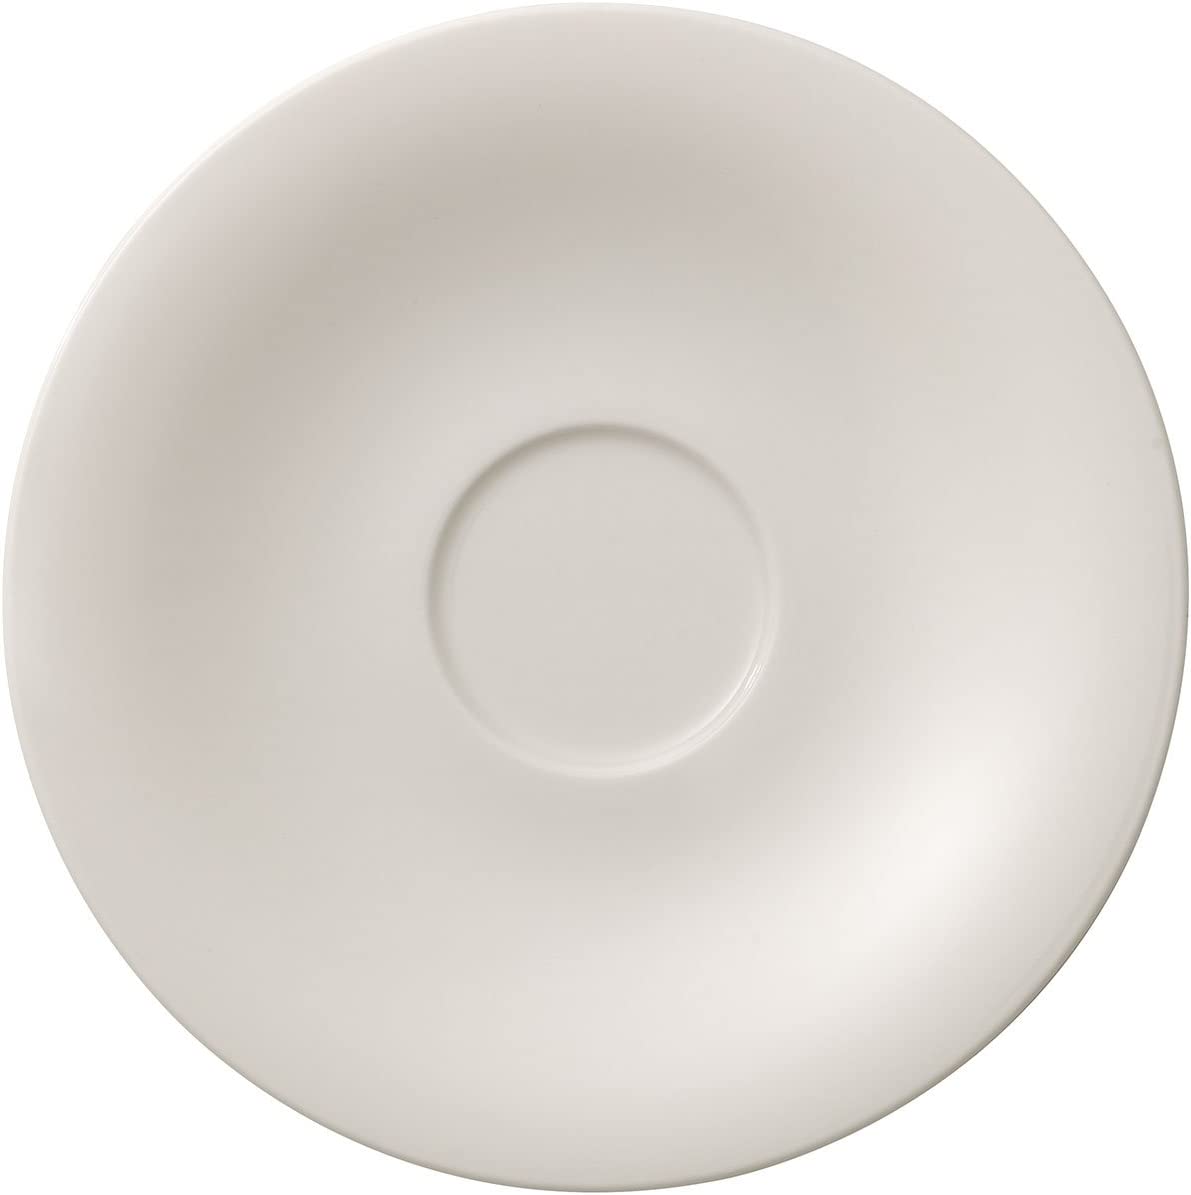 Villeroy & Boch New Cottage Basic Tea Saucer, Premium Porcelain White, 16 x 16 x 2 cm